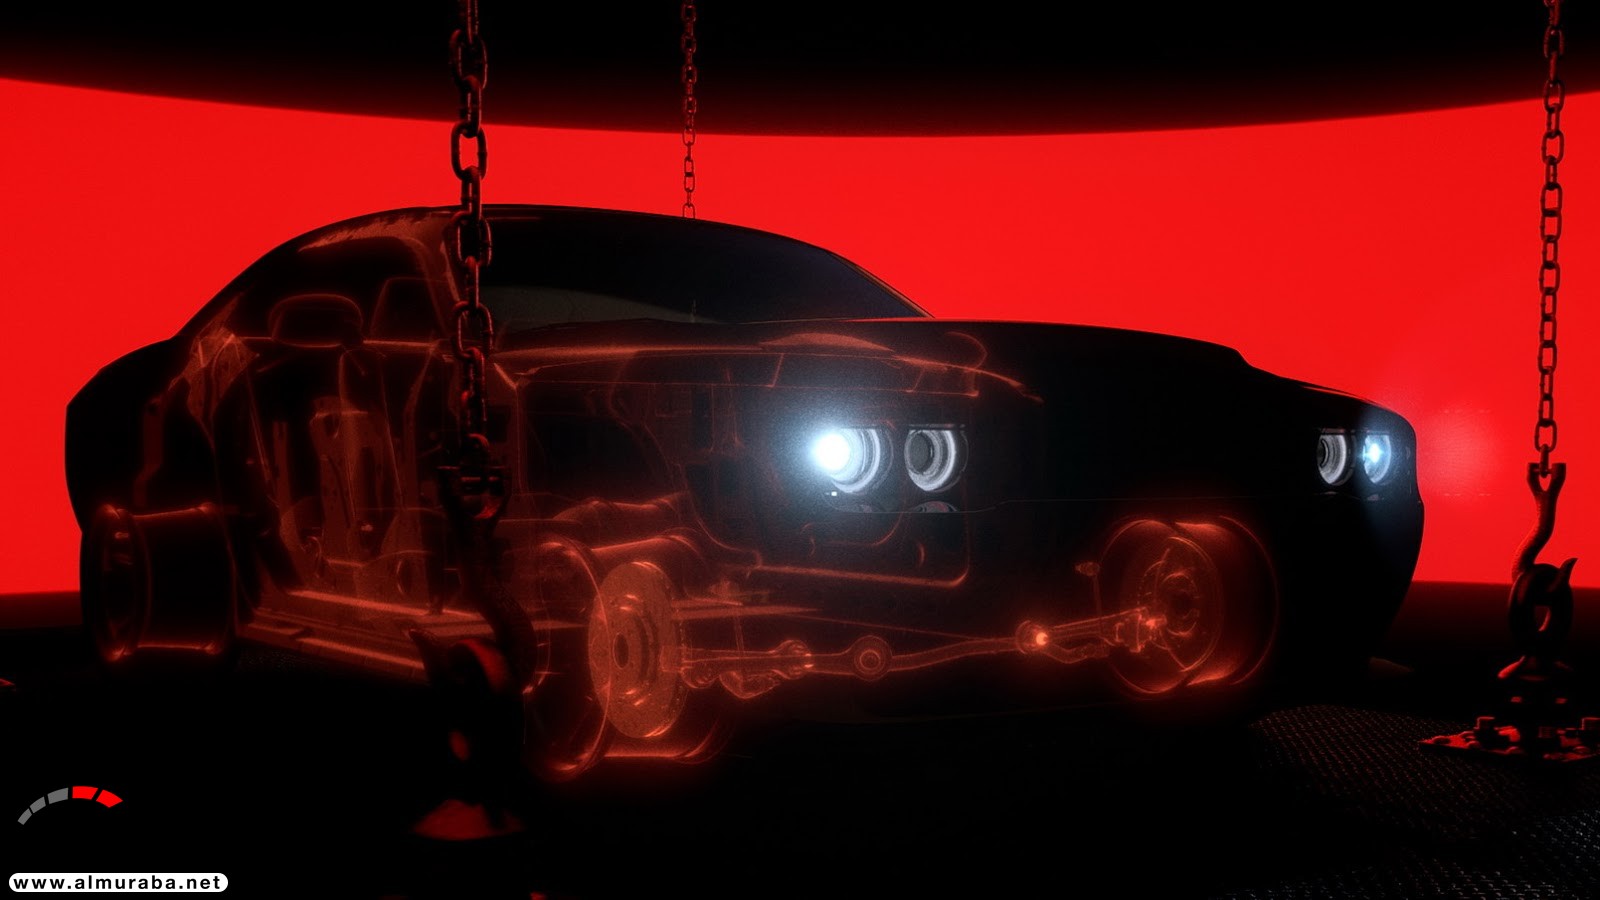 "فيديو وصور" دودج تشالنجر SRT 2018 ديمون نسخة الشيطان تكشف نفسها بقوة 840 حصاناً Dodge Challenger SRT Demon 15